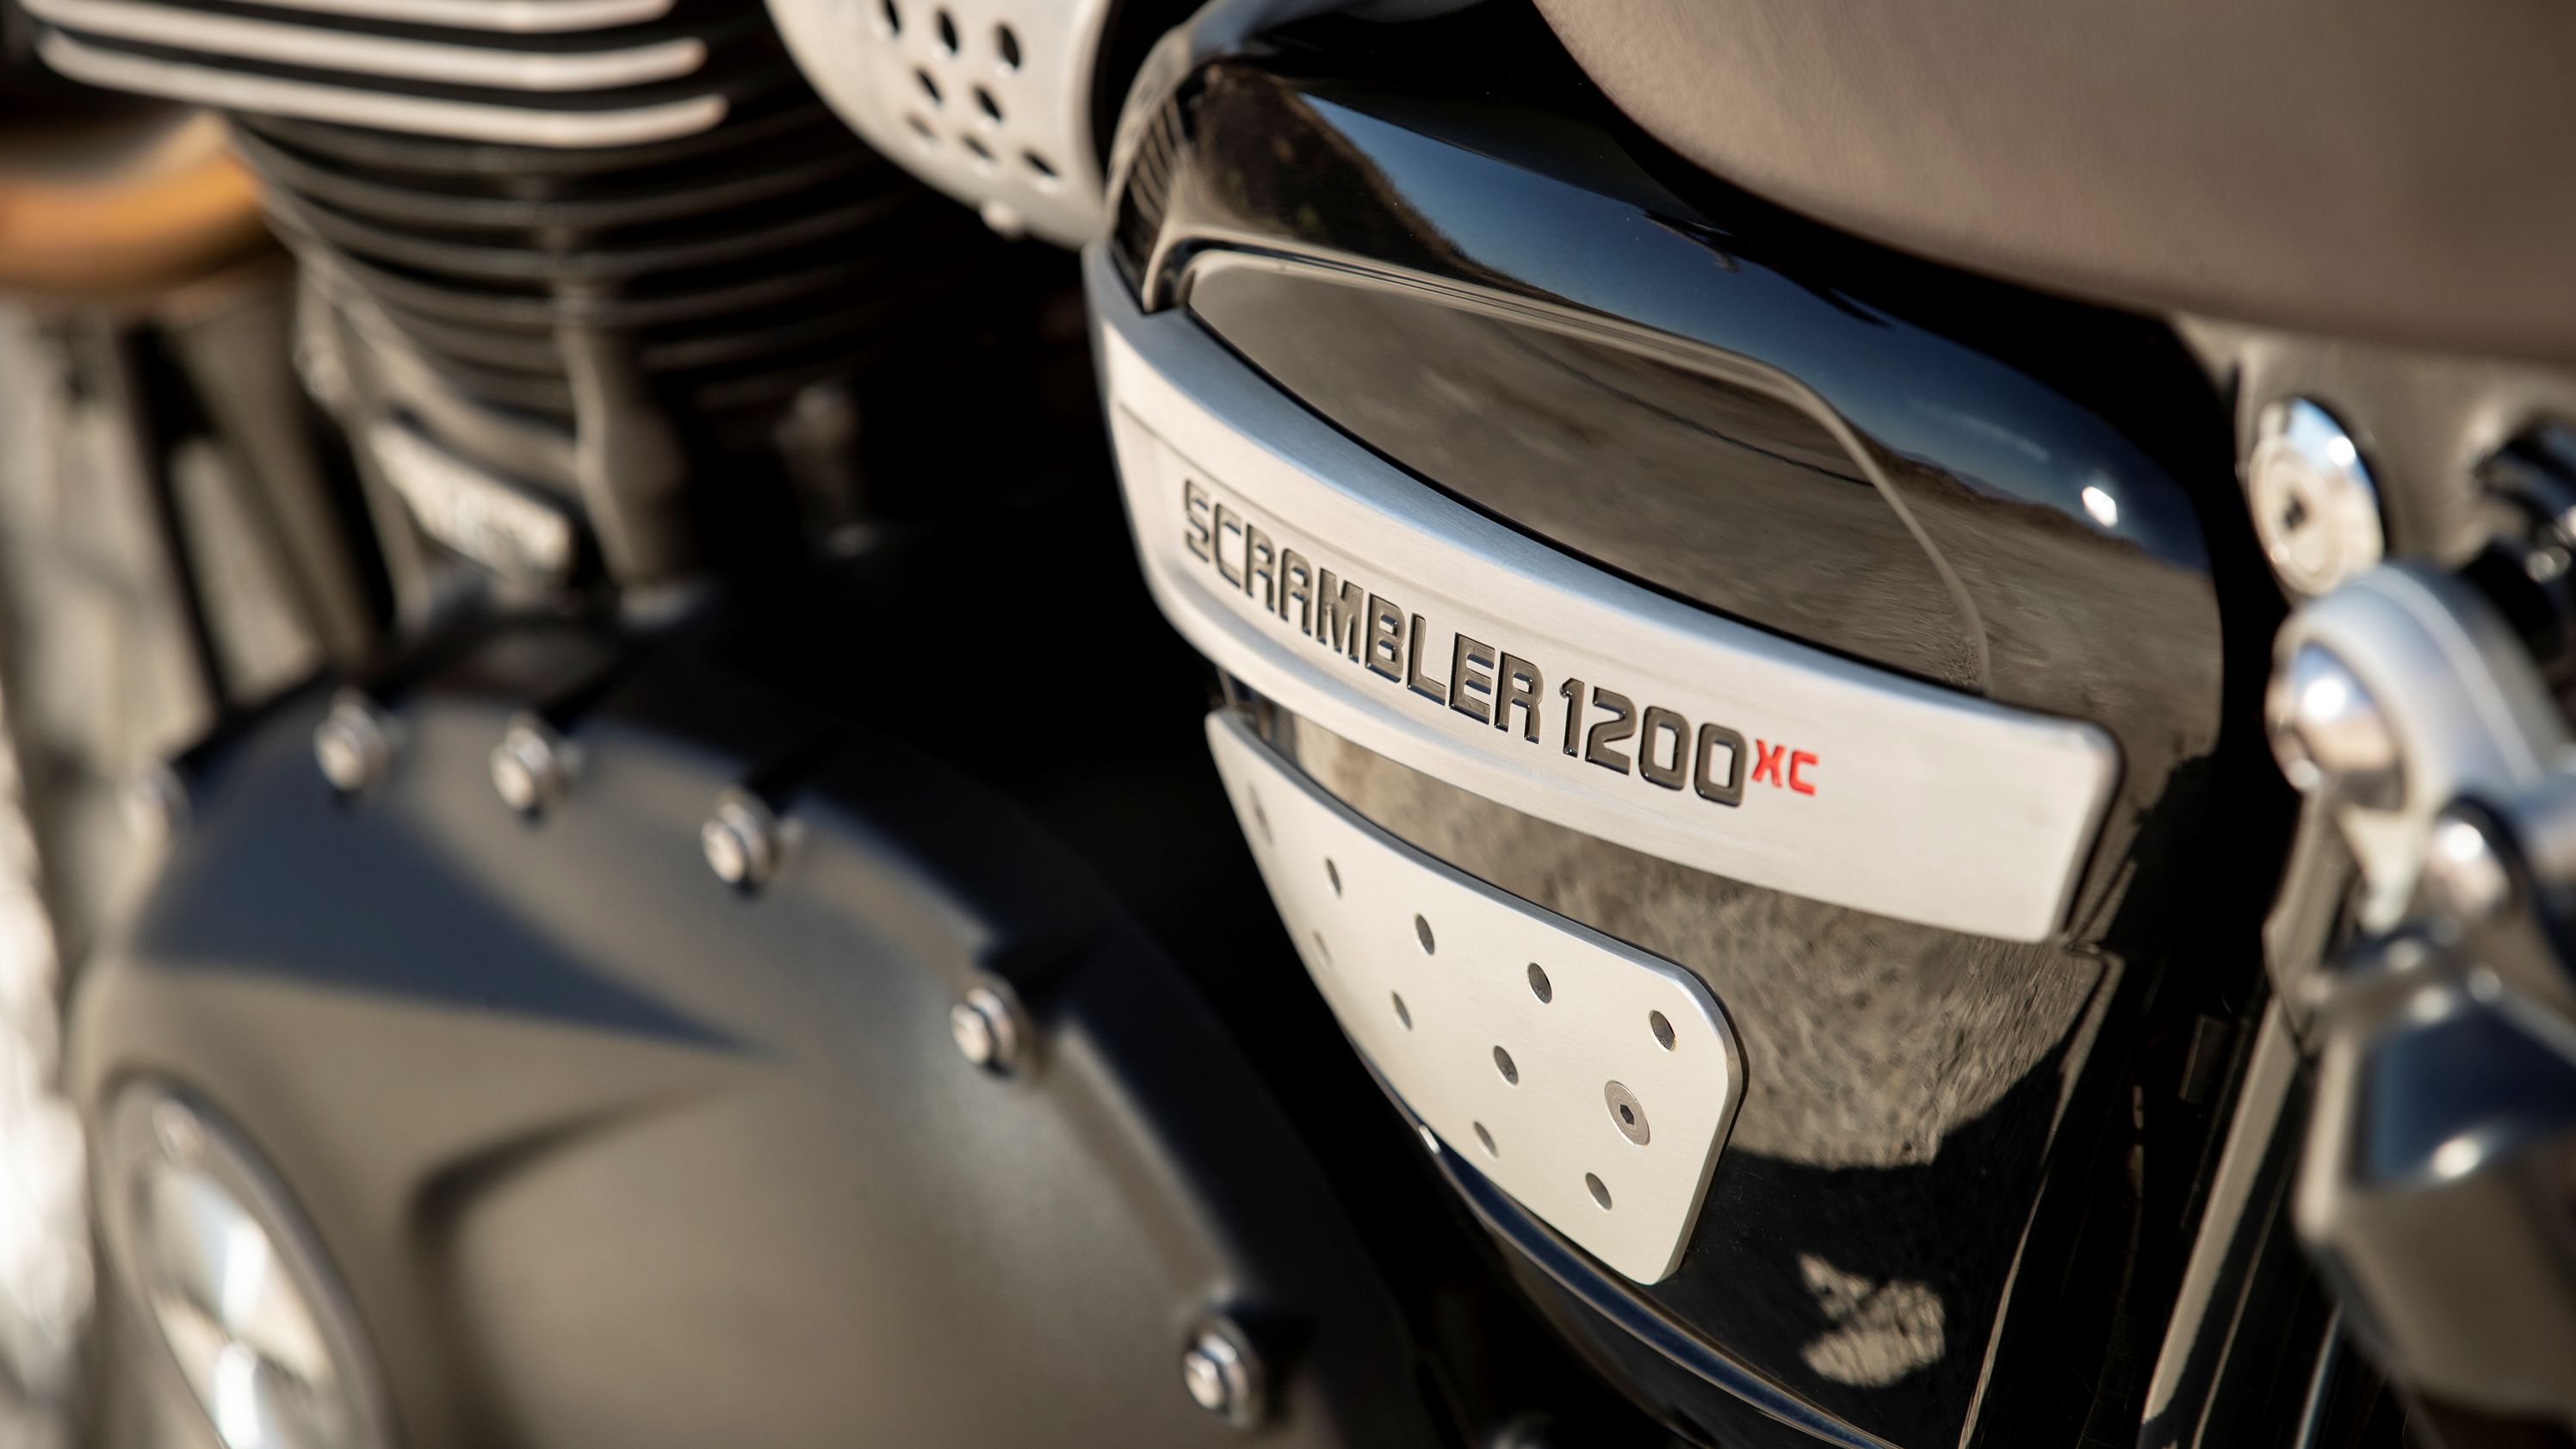 2019 - 2020 Triumph Scrambler 1200 XC